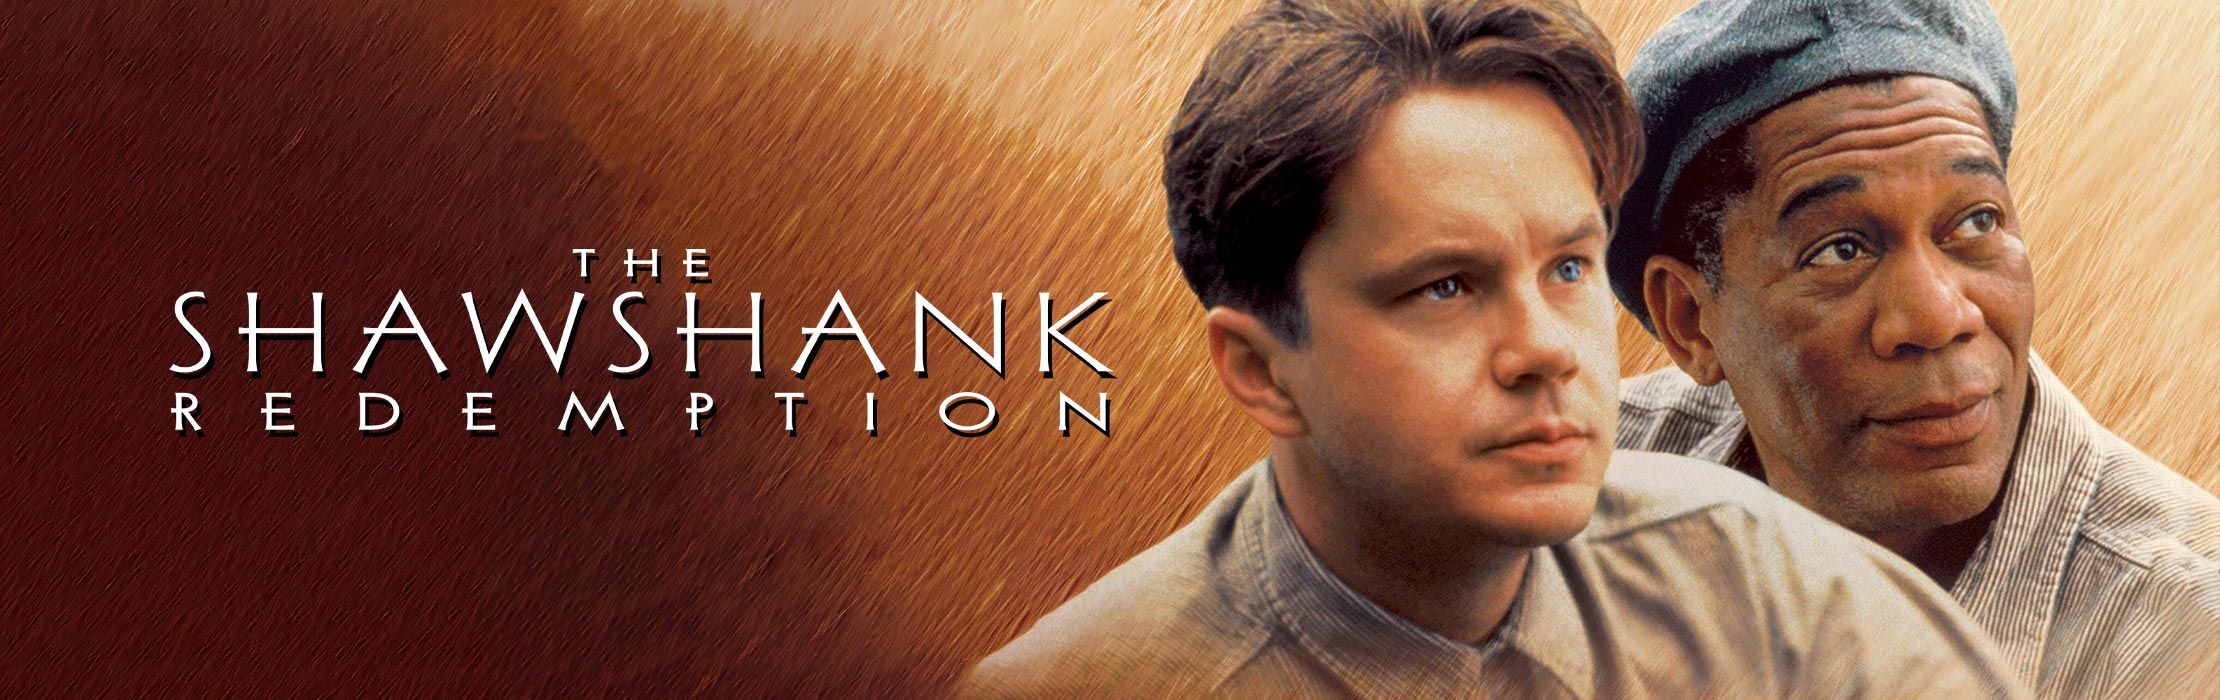 /film/The-Shawshank-Redemption